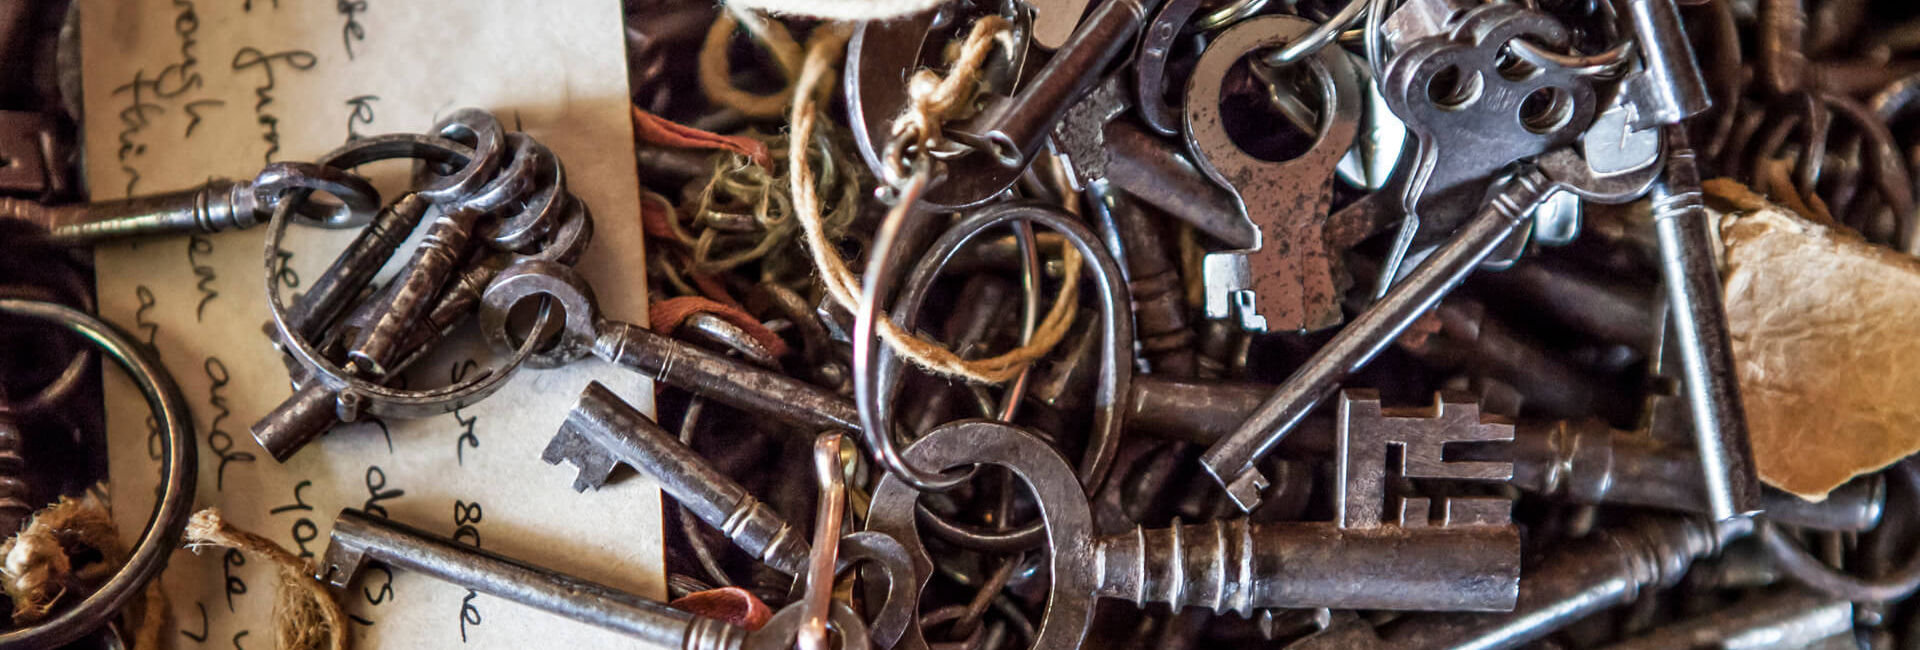 Heel veel oude sleutels. Welke past op de escape box? - Escape the city Delft